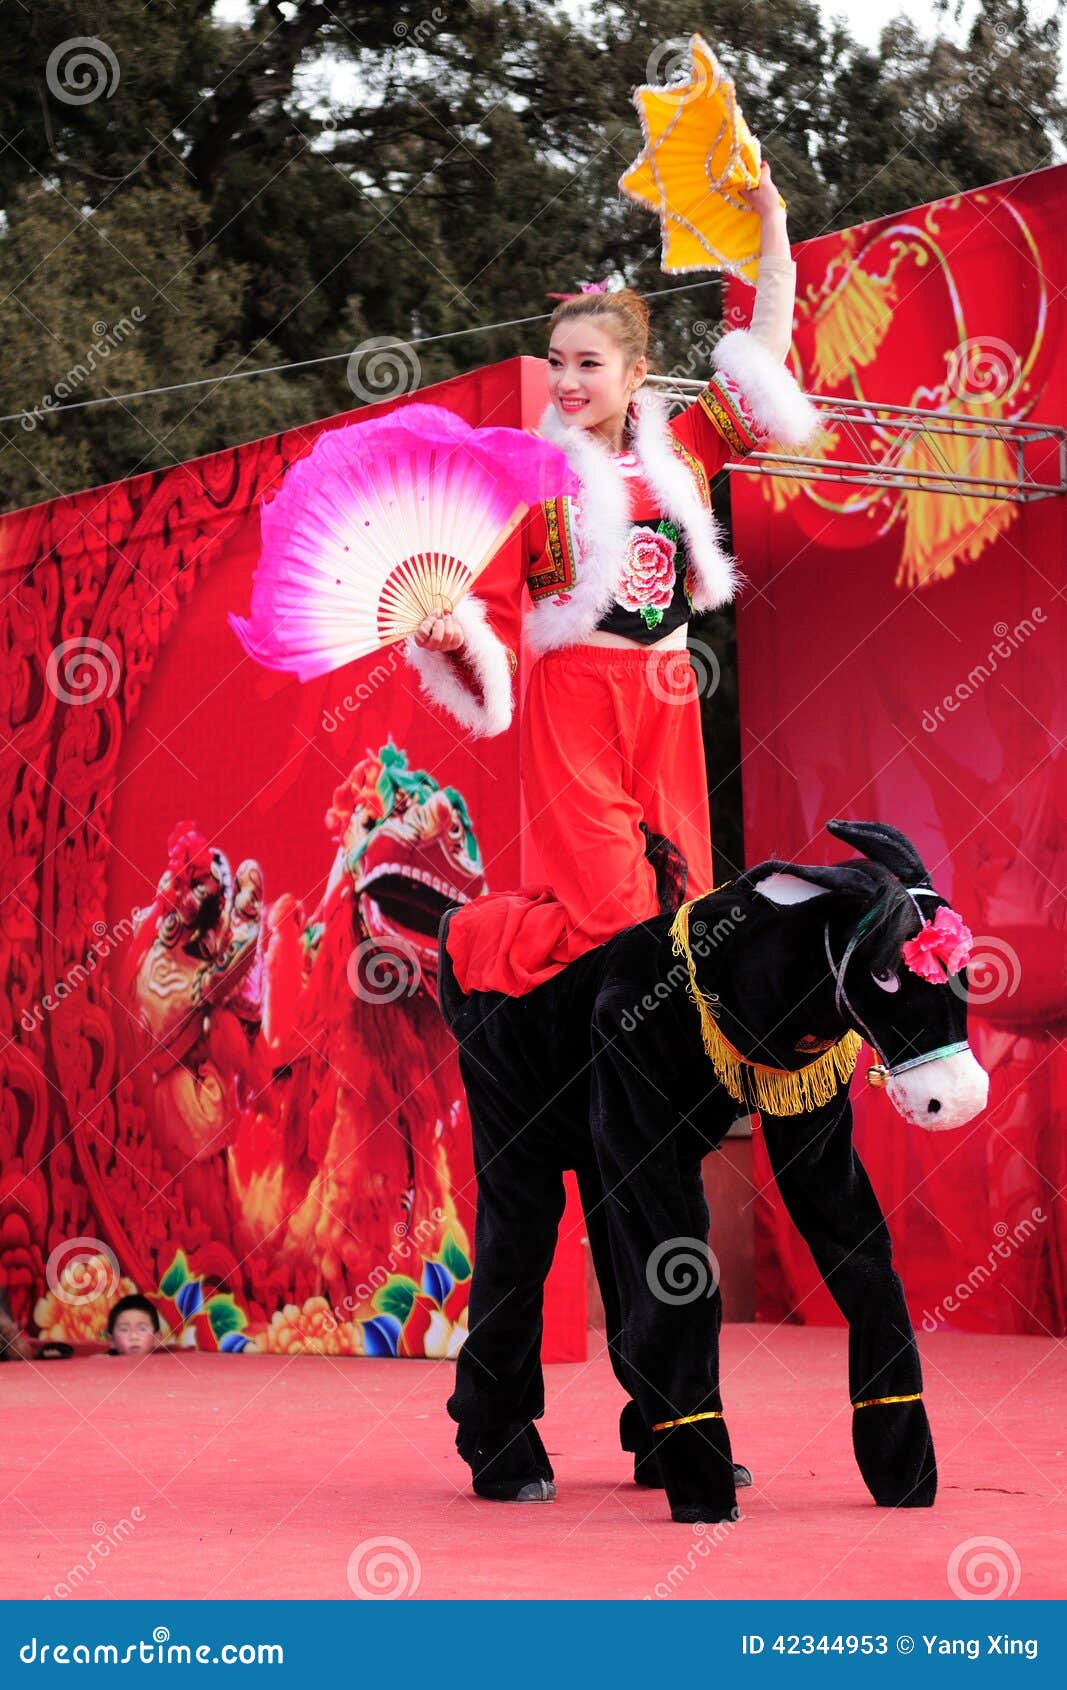 Yangge Tanz. Yangko-Tanz, wird vom Lebendialekt abgeleitet und lokale Volkskunstblumentänze der Han-Nationalität, ist die chinesische Volkshauptsächlichunterhaltung von Seien unten von Alter zu Alter, im populären Prozess übergeben Sie, ist gegeben worden unterschiedliche Regionsfarbe und charakteristisch, so hat gebildet die unterschiedliche Art- und LeistungsKunstform Changli-yangko Tanz ist hauptsächlich Volkstanz der Changli-Leuteliebe, zum von der Performing Arten zu sehen und zu hören, und seine Ursprung können zum Vorkommen der chinesischen nationalen Kultur verfolgt werden und das Khitan, Nuzhen, Mongolei und andere Kultur der ethnischen Minderheiten schlagen ständig, Liao, Jin, Yuan-Fusionszeitraum